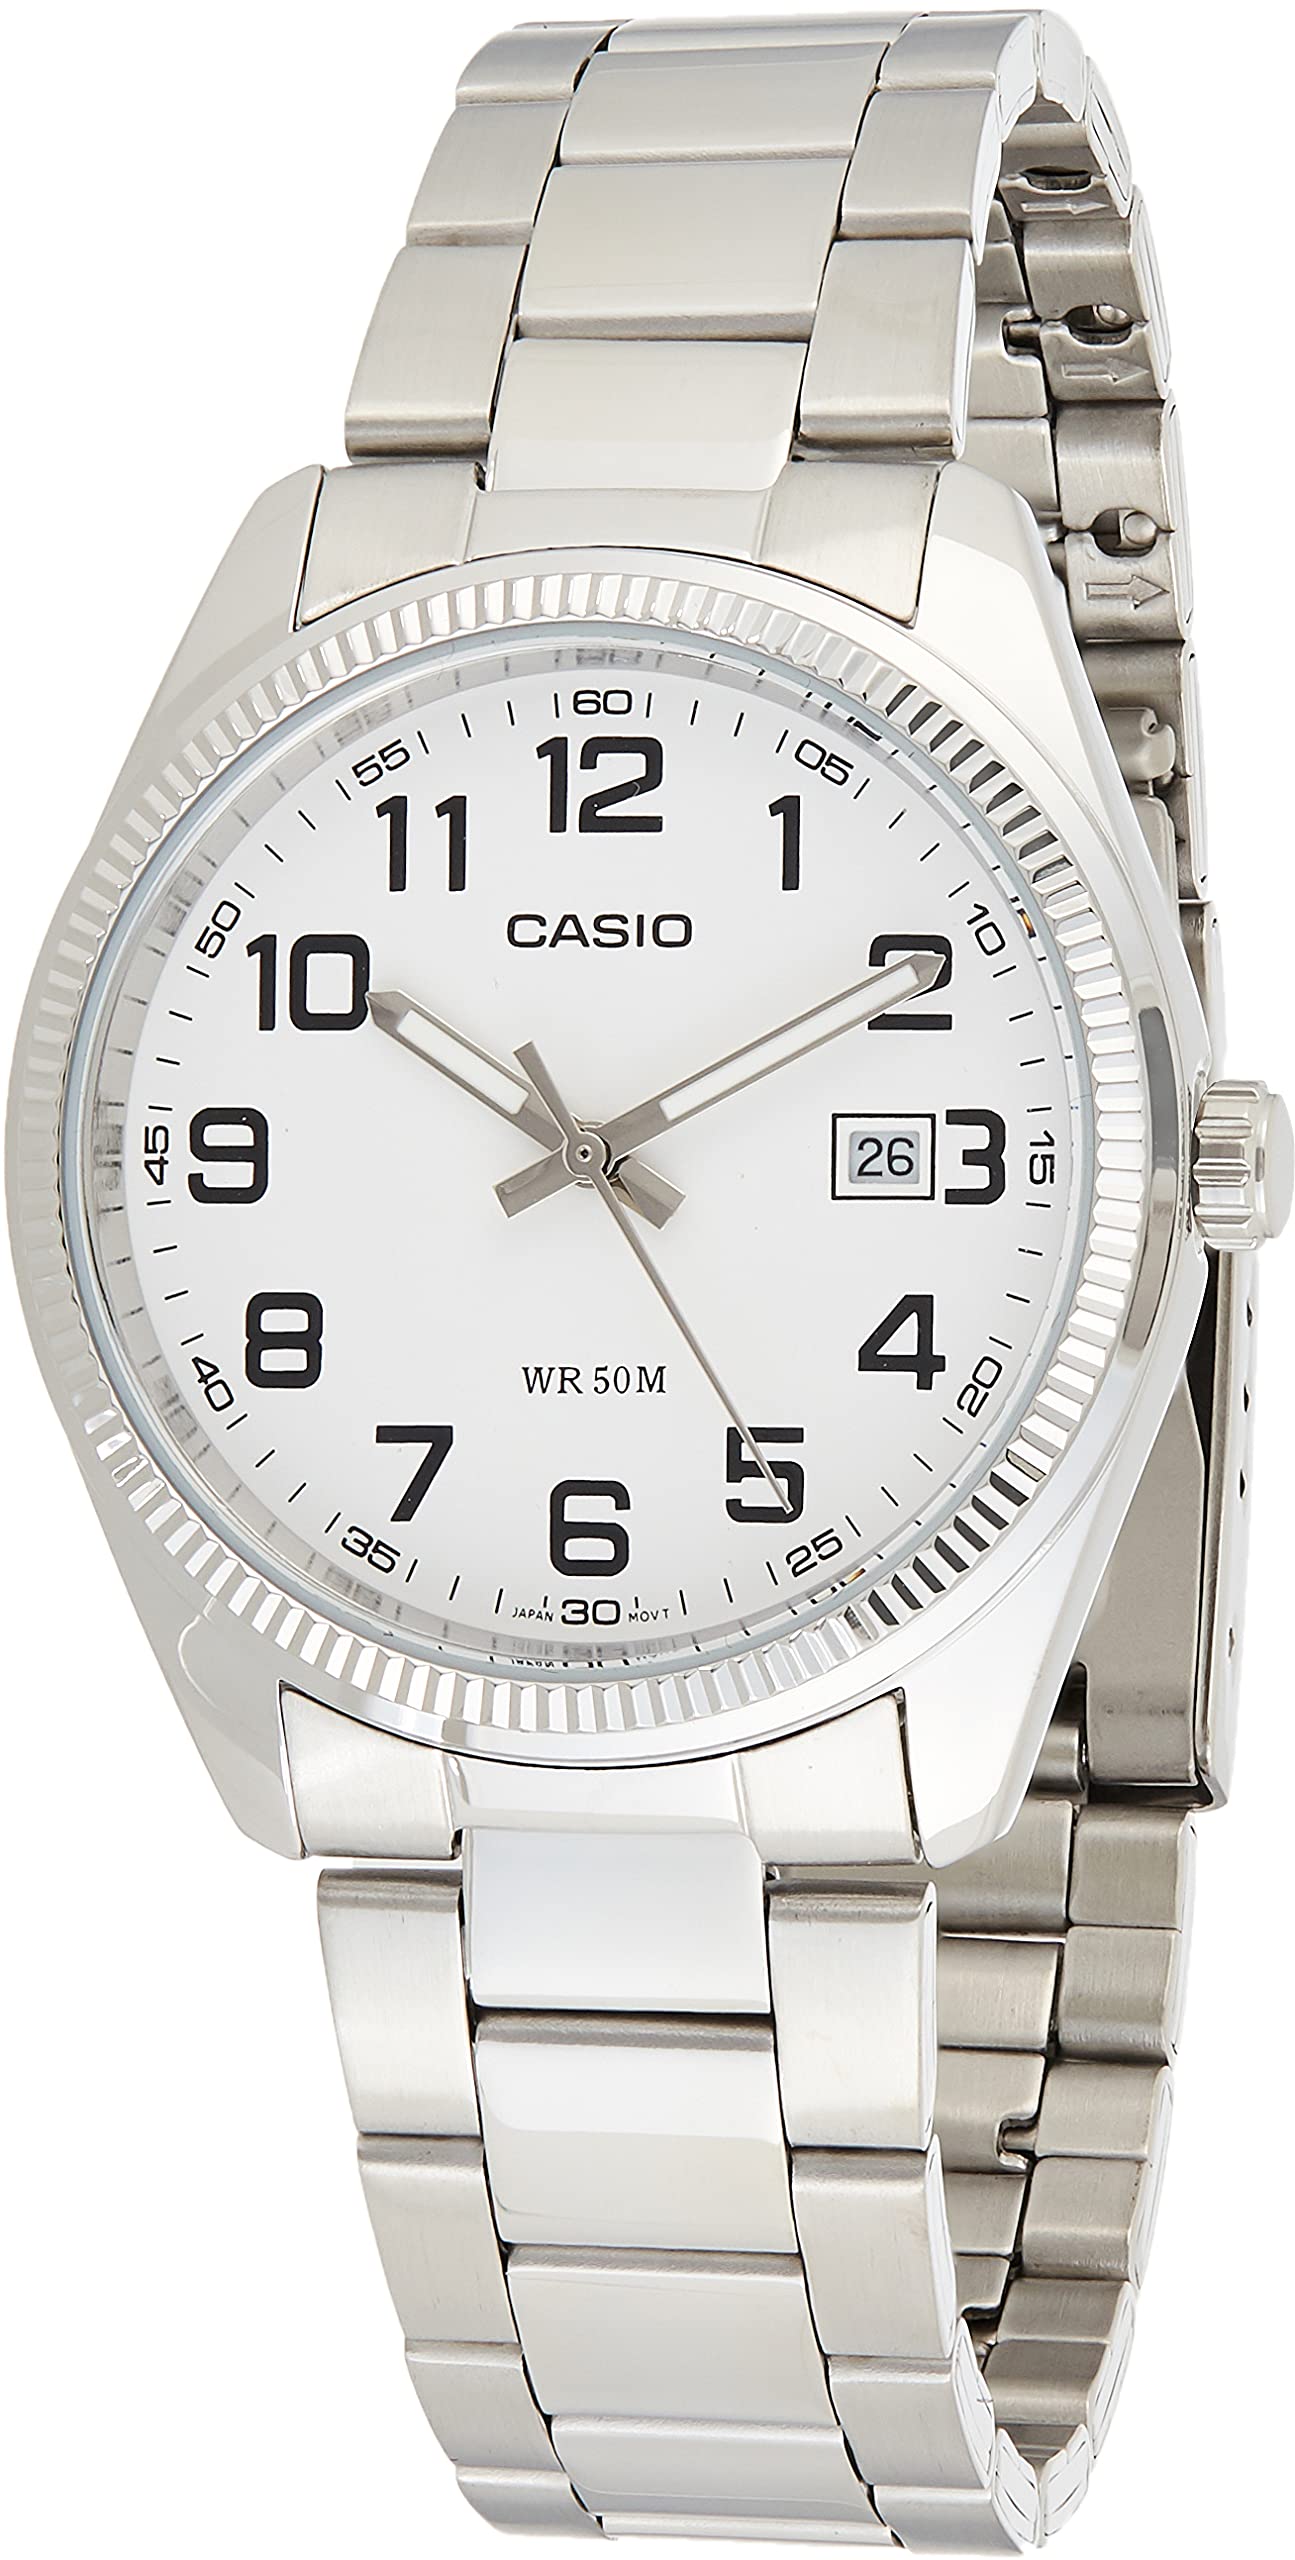 Casio General Men's Watches Standard Analog MTP-1302D-7BVDF - WW